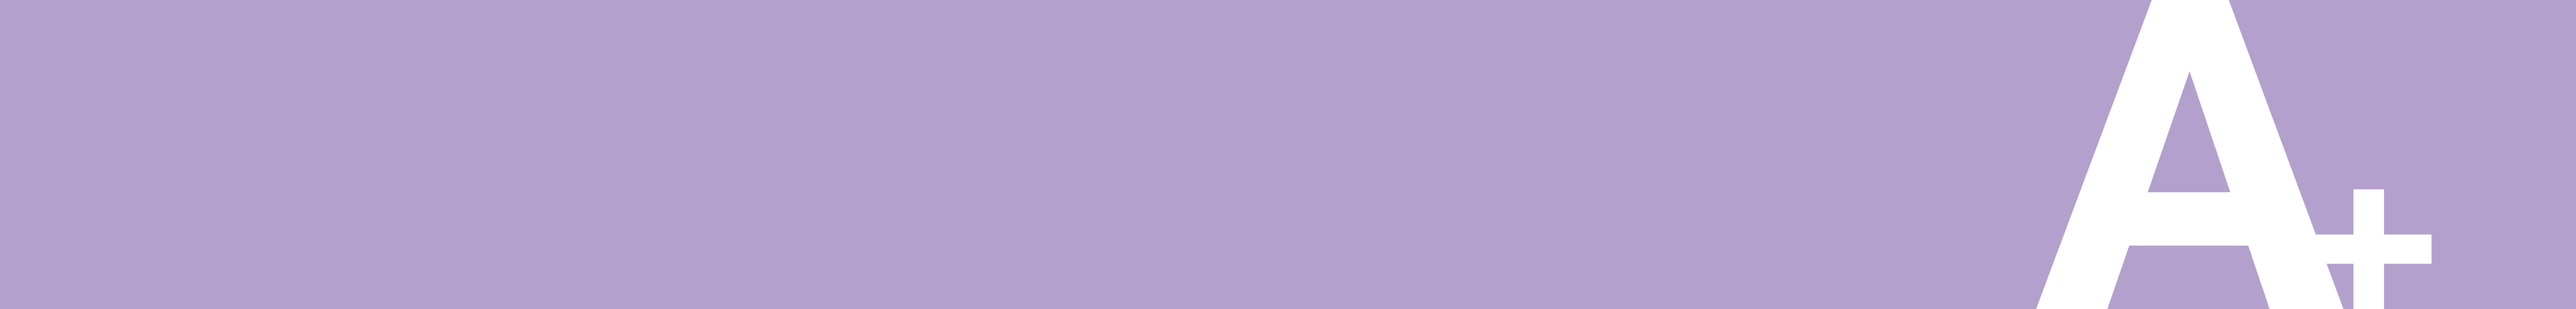 A_Plus_Banner_VCE_Purple